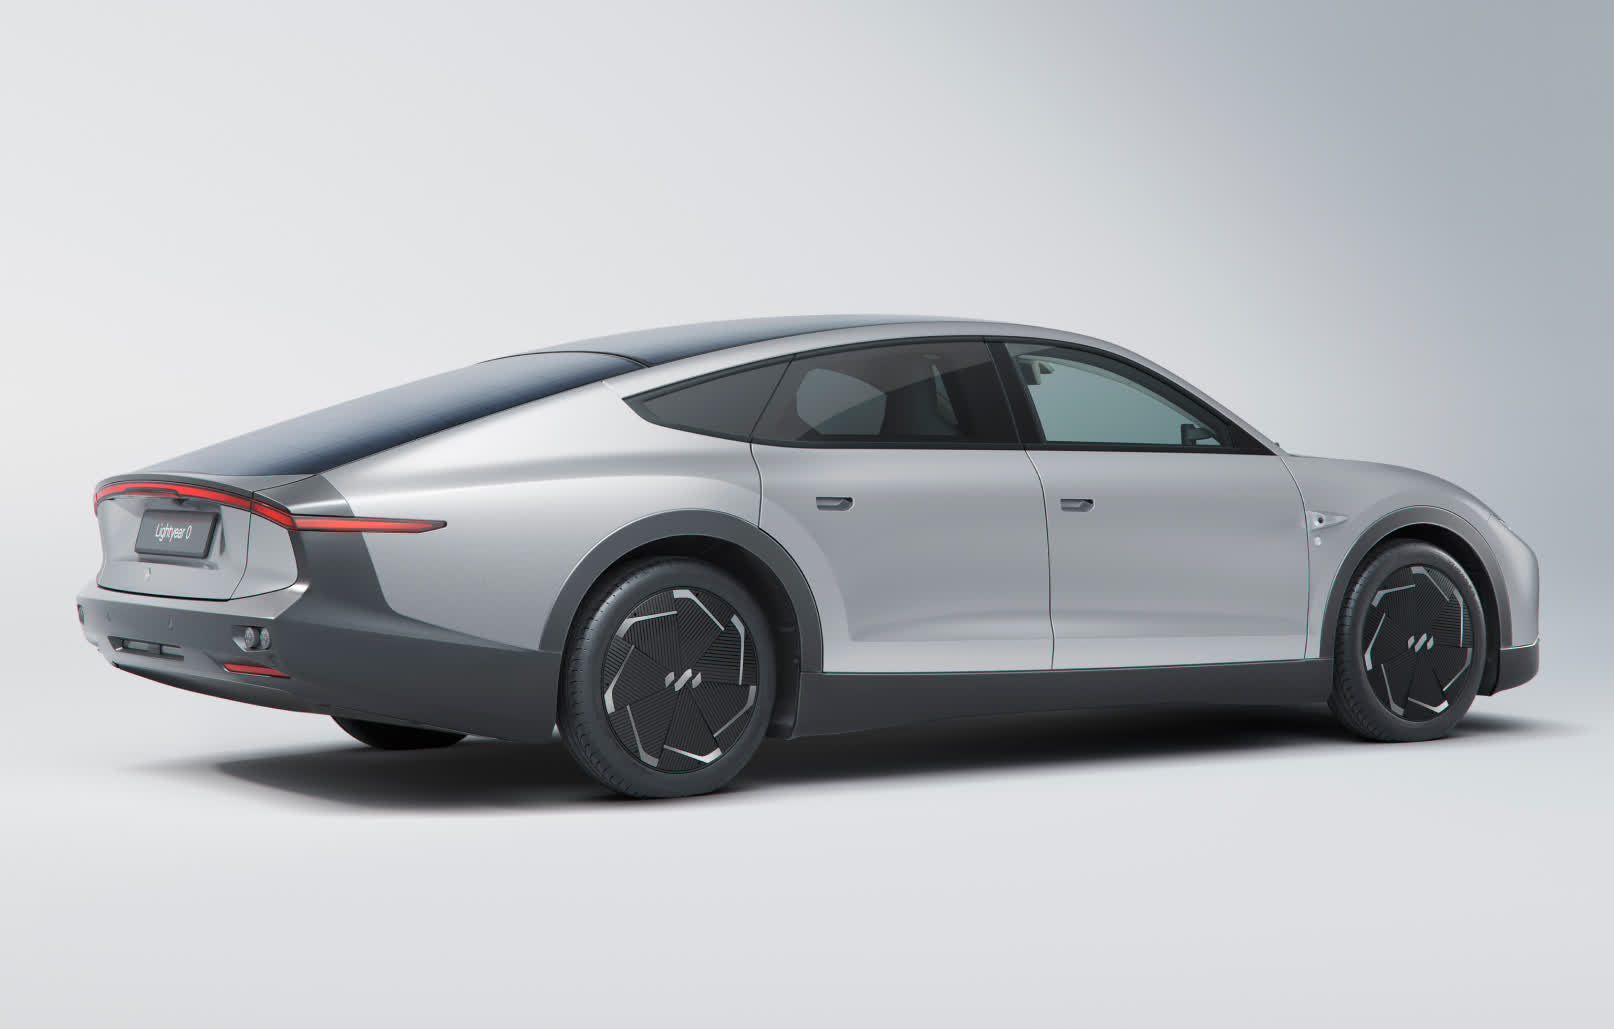 Lightyear announces the world's first production-ready solar car